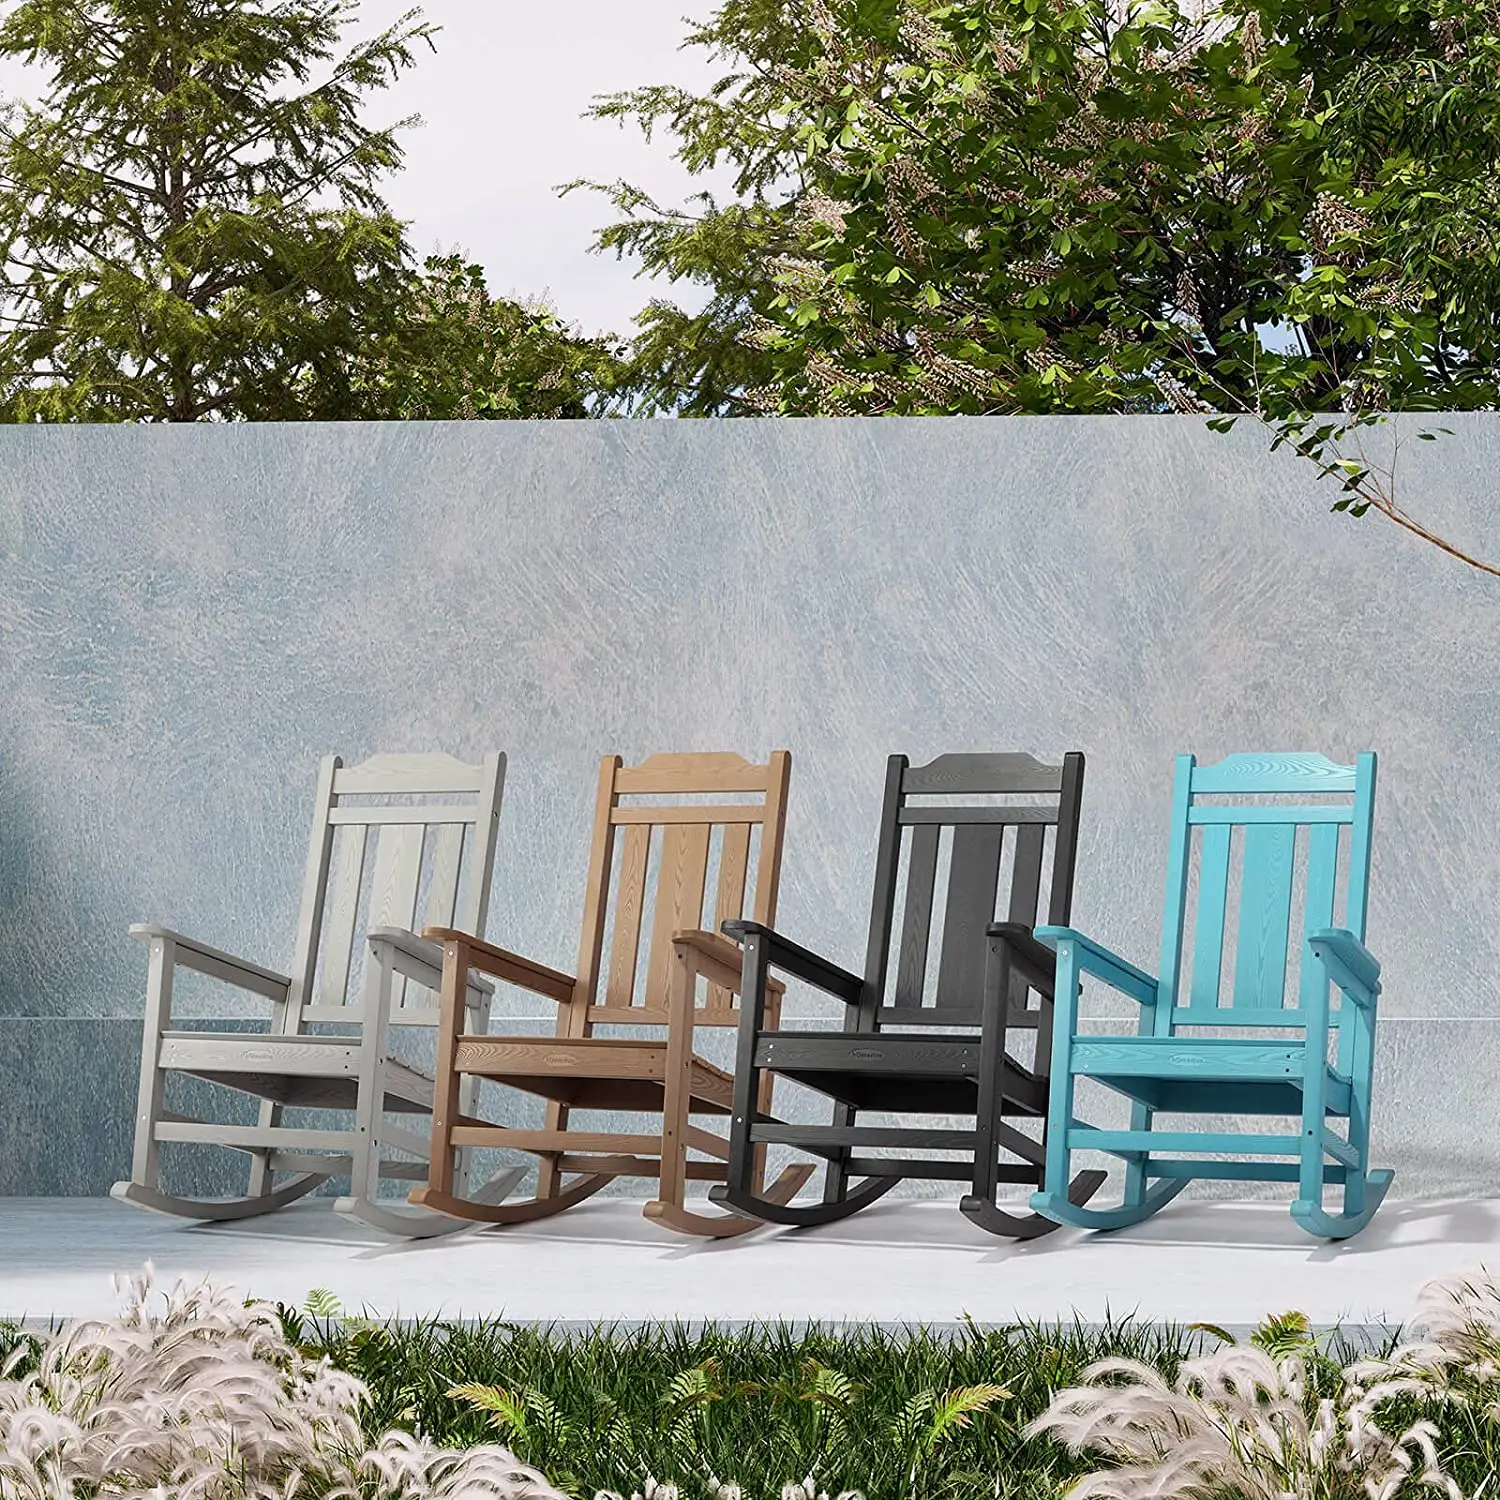 Cadeiras de balanço traseiro de alta qualidade, cadeiras anti-uv de plástico, adirondack, para áreas externas, pátio, jardim, cadeira de balanço